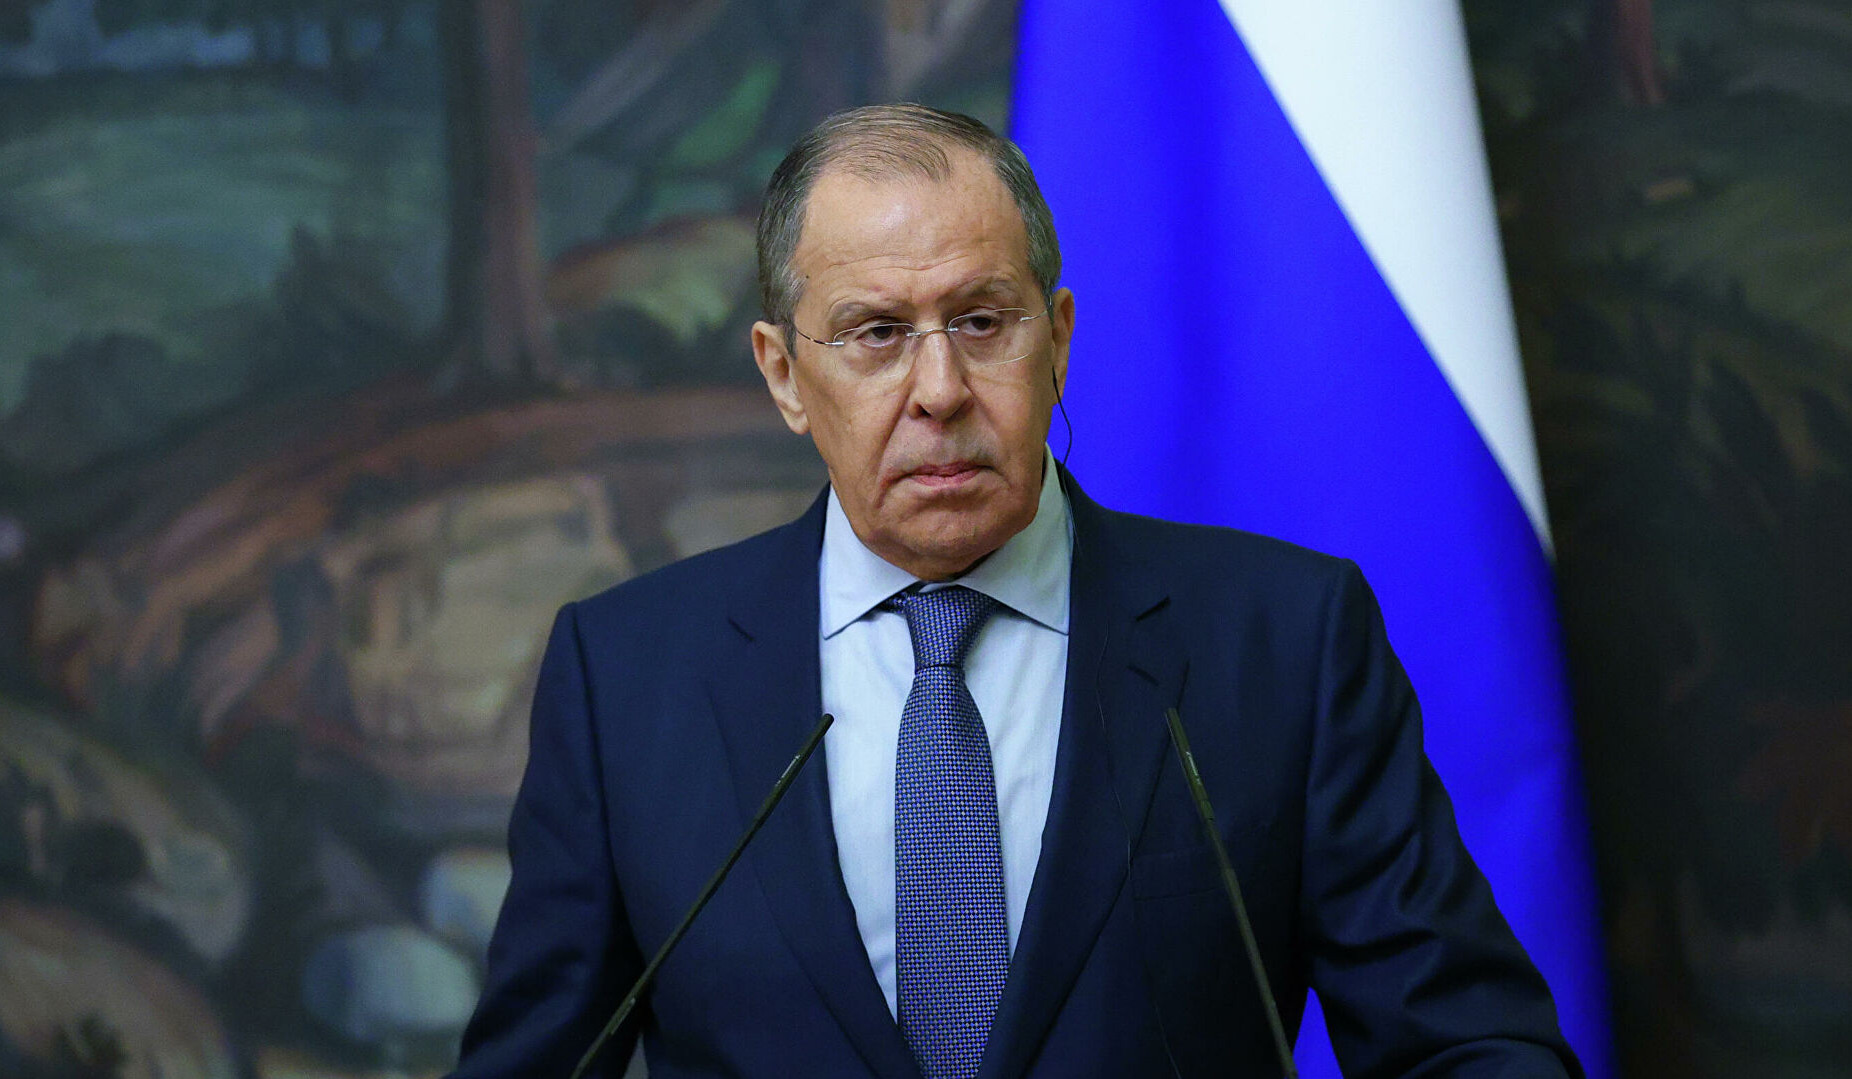 NATO enters proxy war against Russia: Lavrov